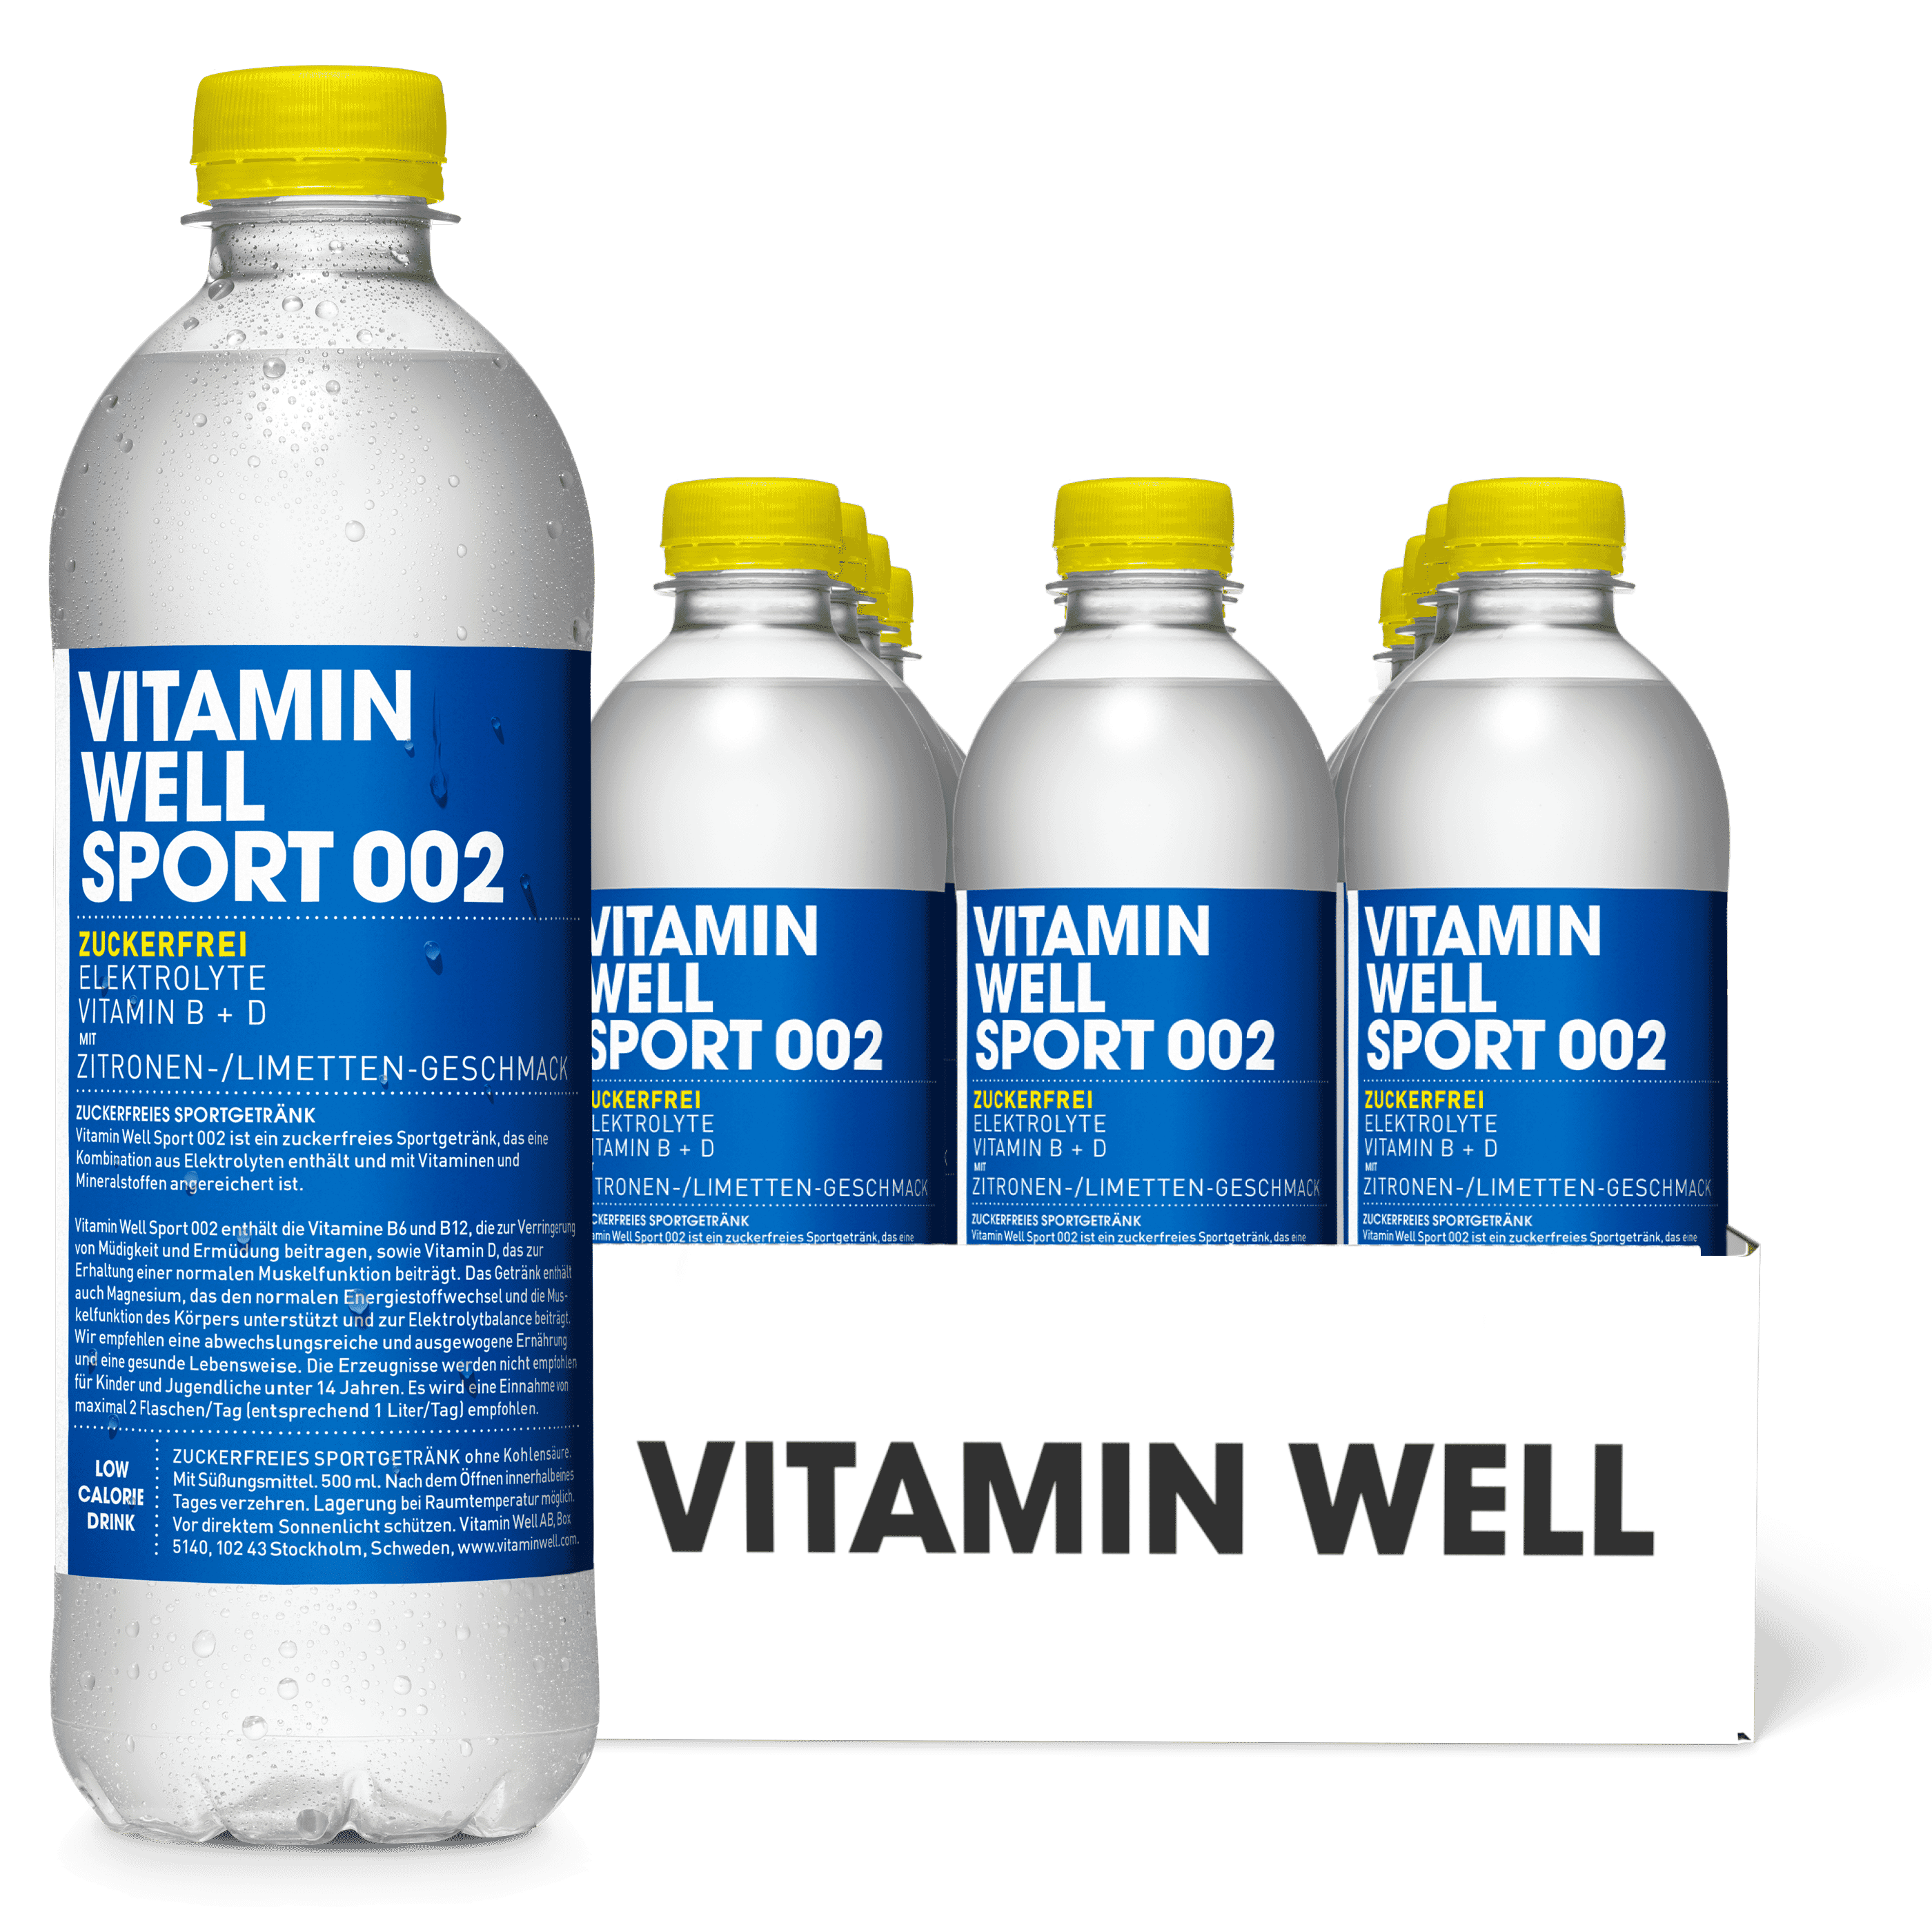 Vitamin Well Sport 002